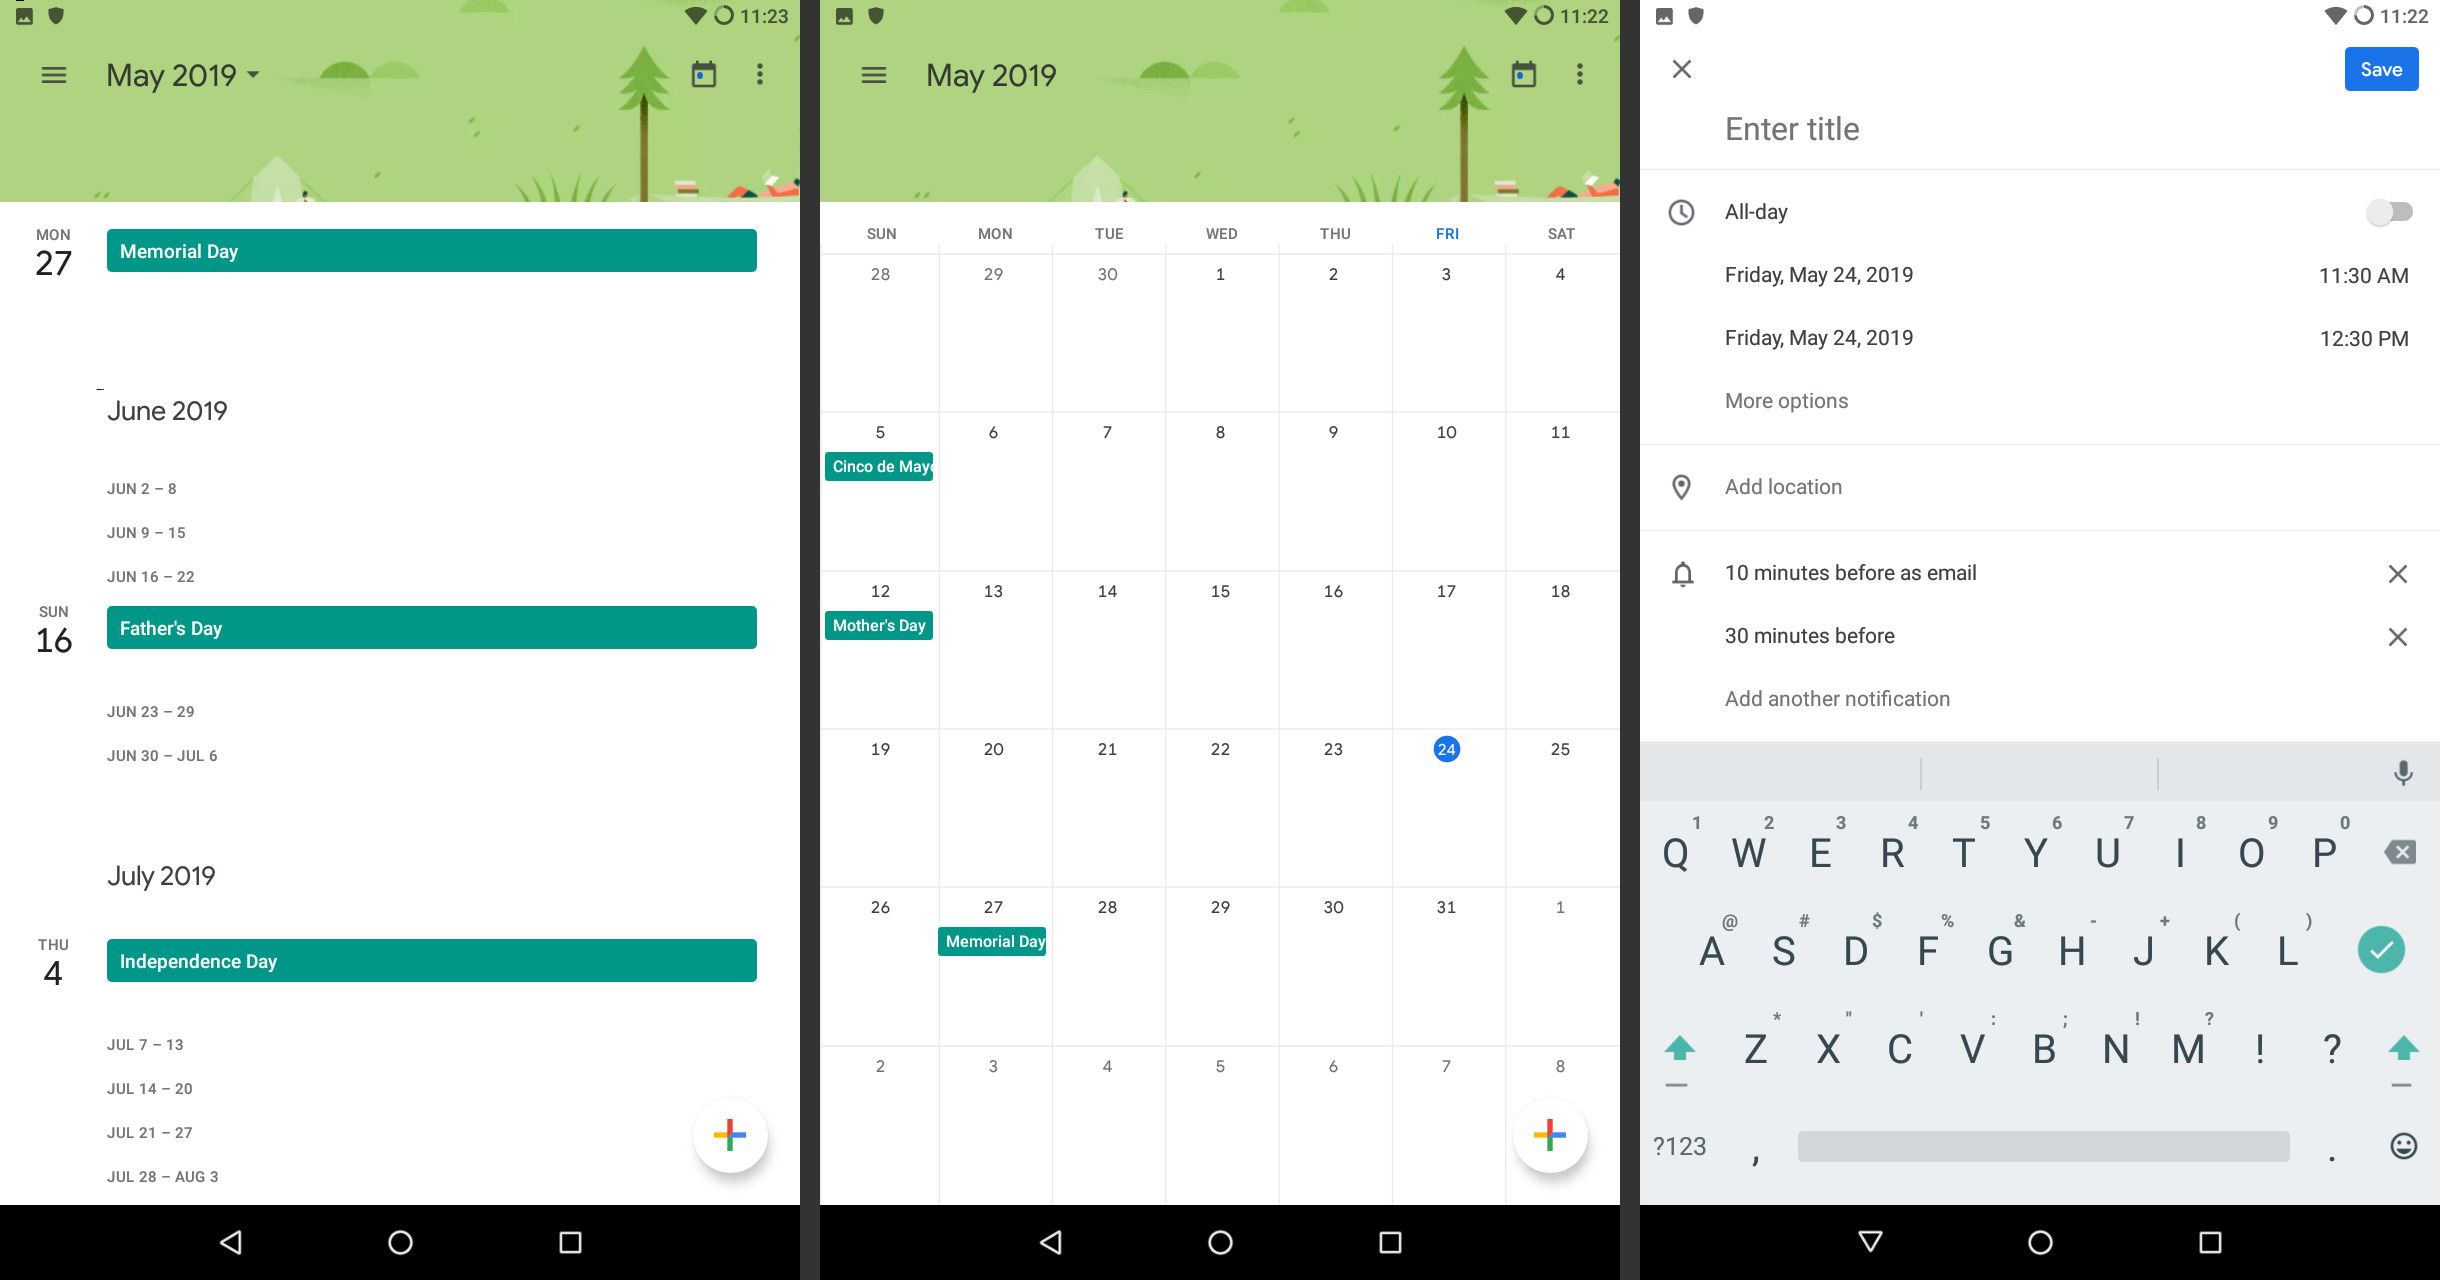 Zobrazení Google Calendar pro Android je dobré využití starého tabletu s Androidem